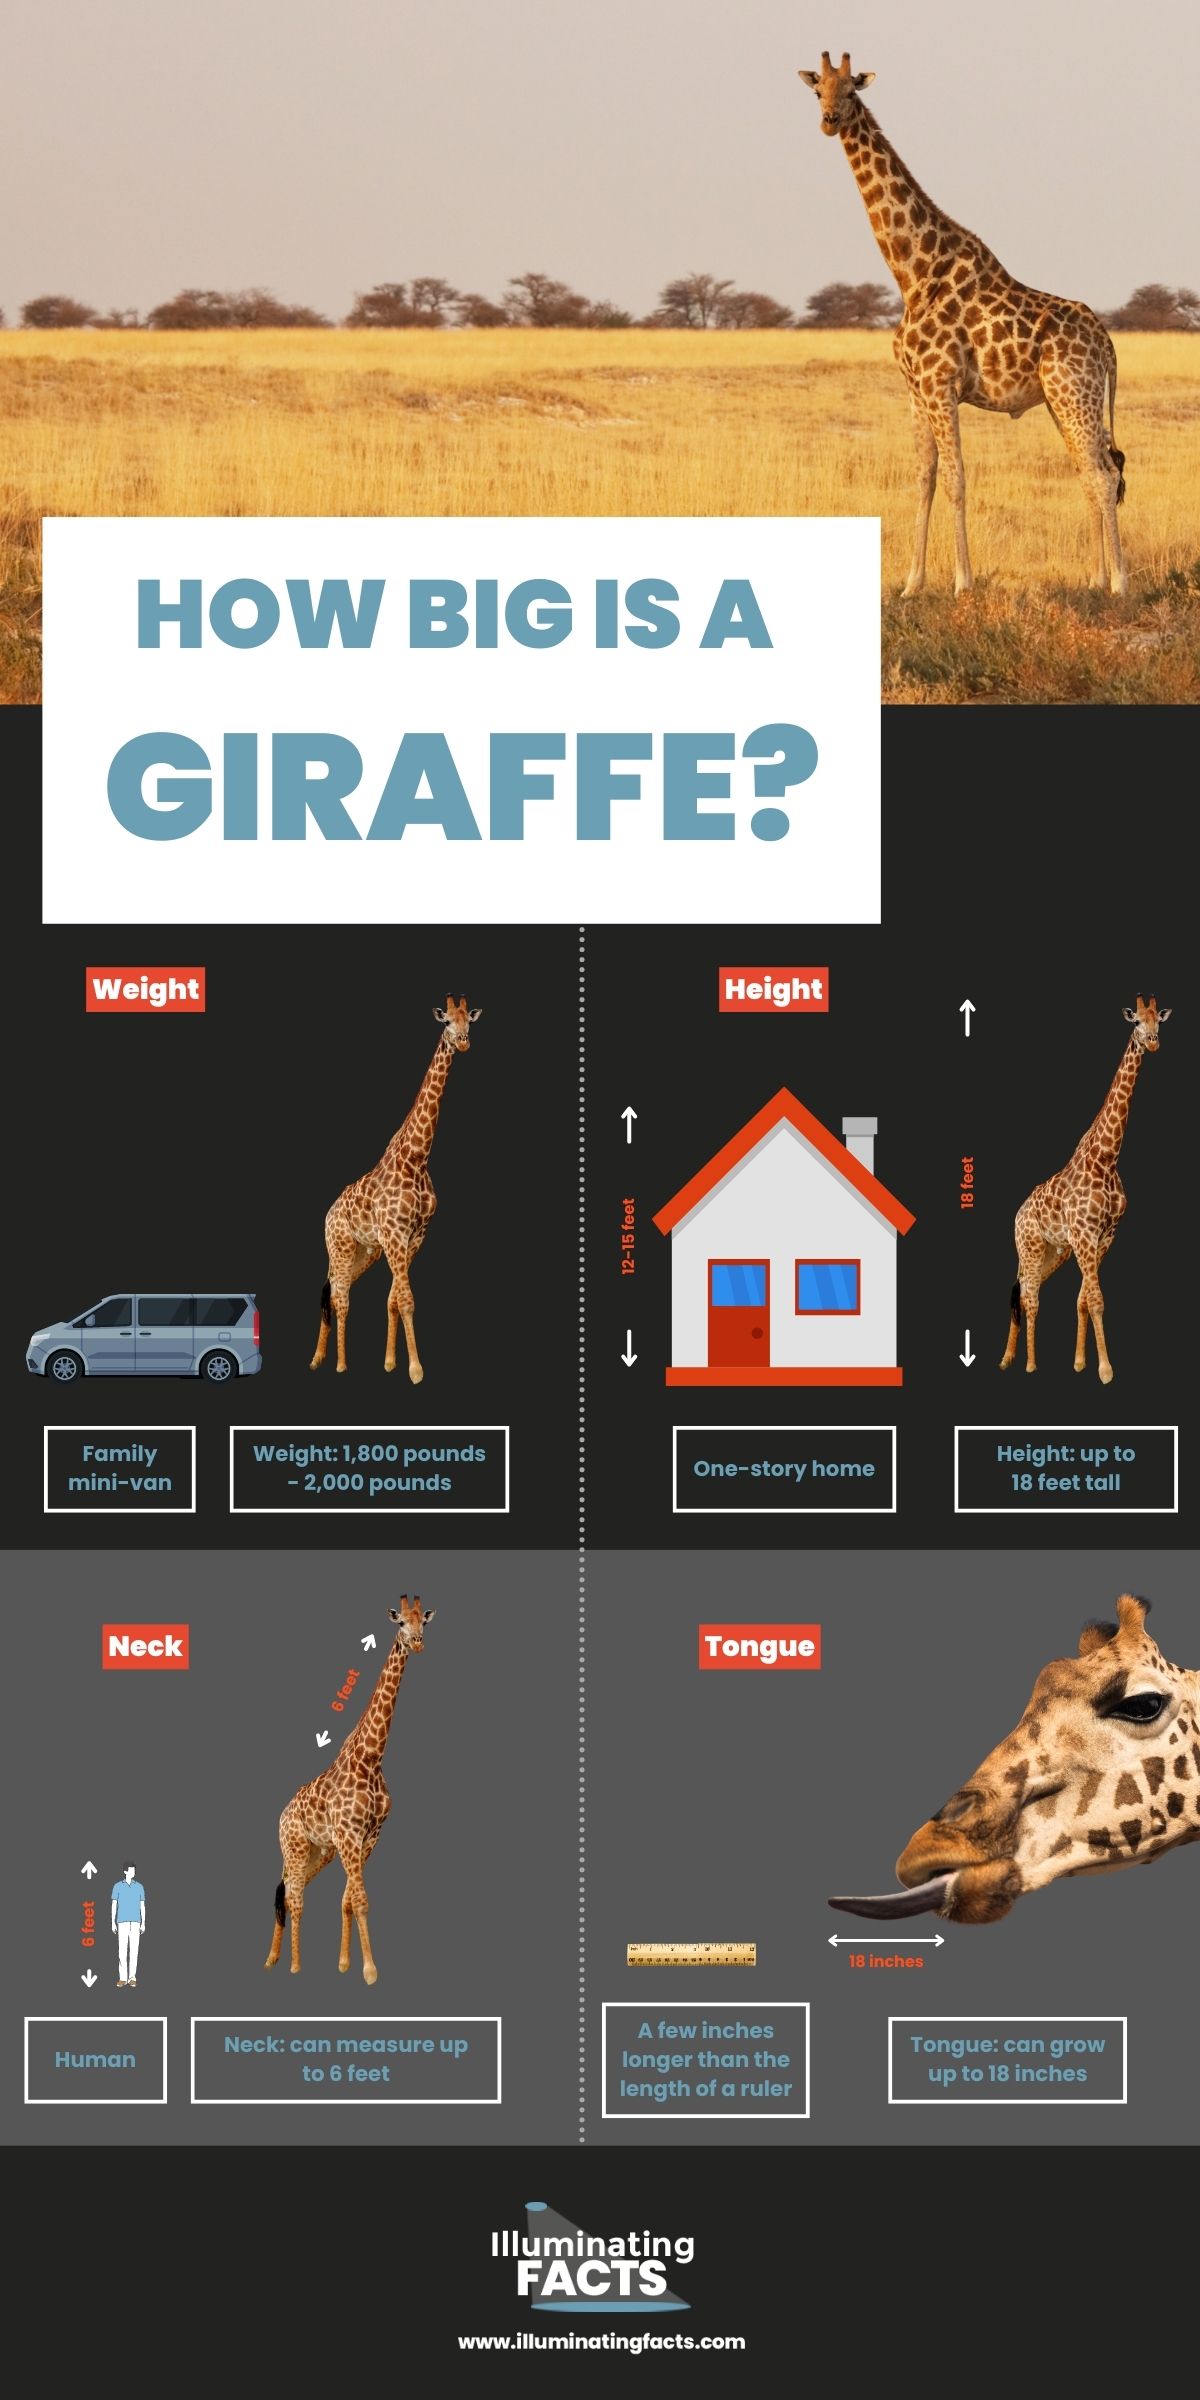 How Big is a Giraffe?